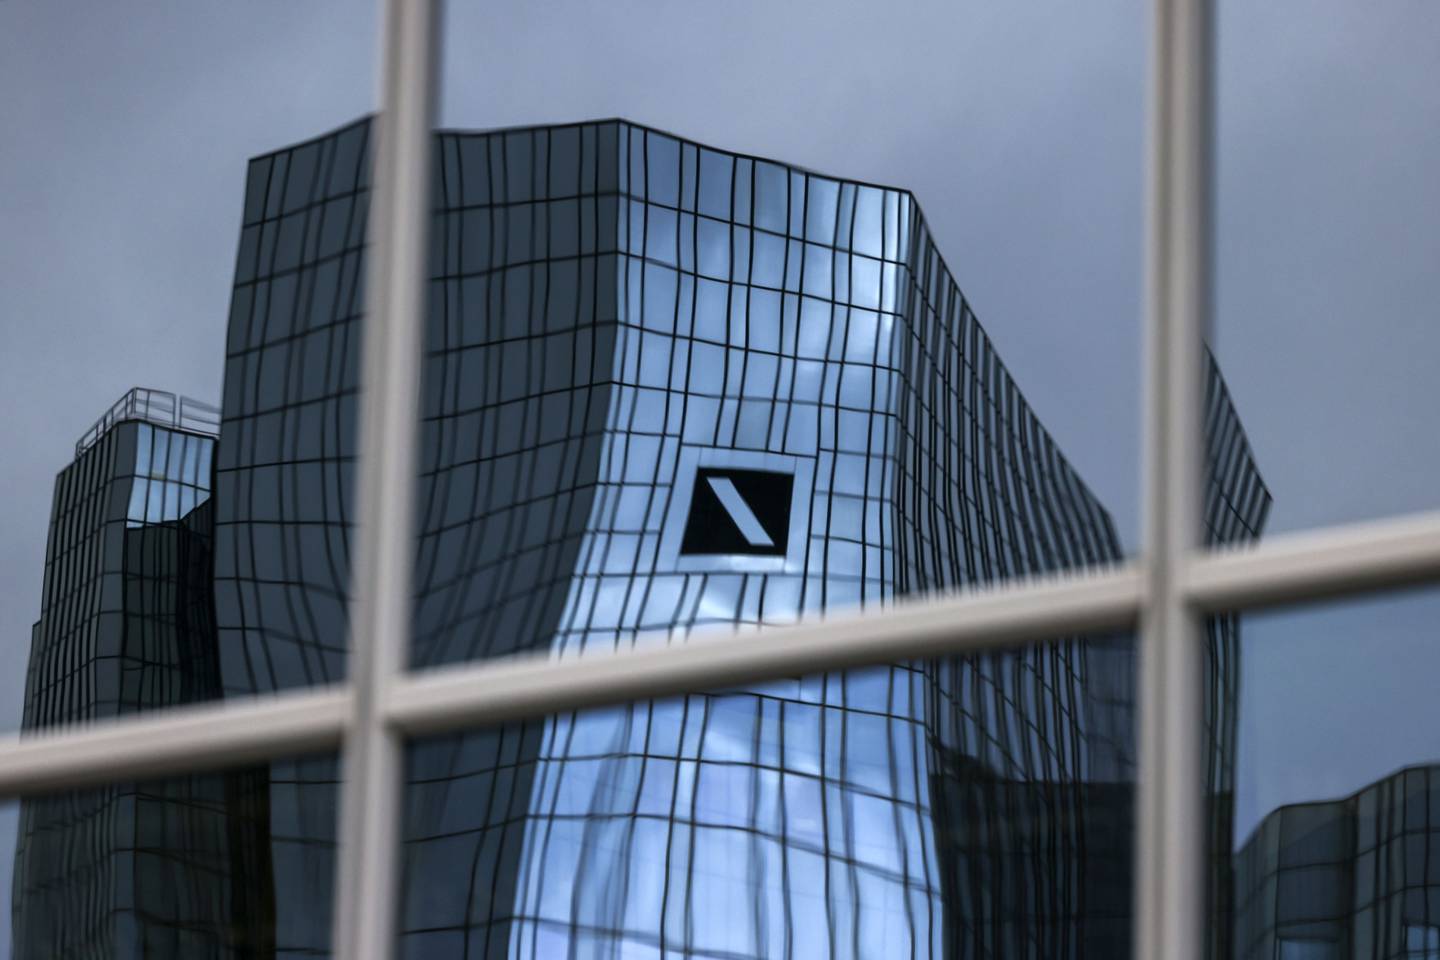 Los reguladores bancarios europeos han comunicado a Deutsche Bank AG que “no están satisfechos” con la revisión interna de la entidad crediticia alemana.